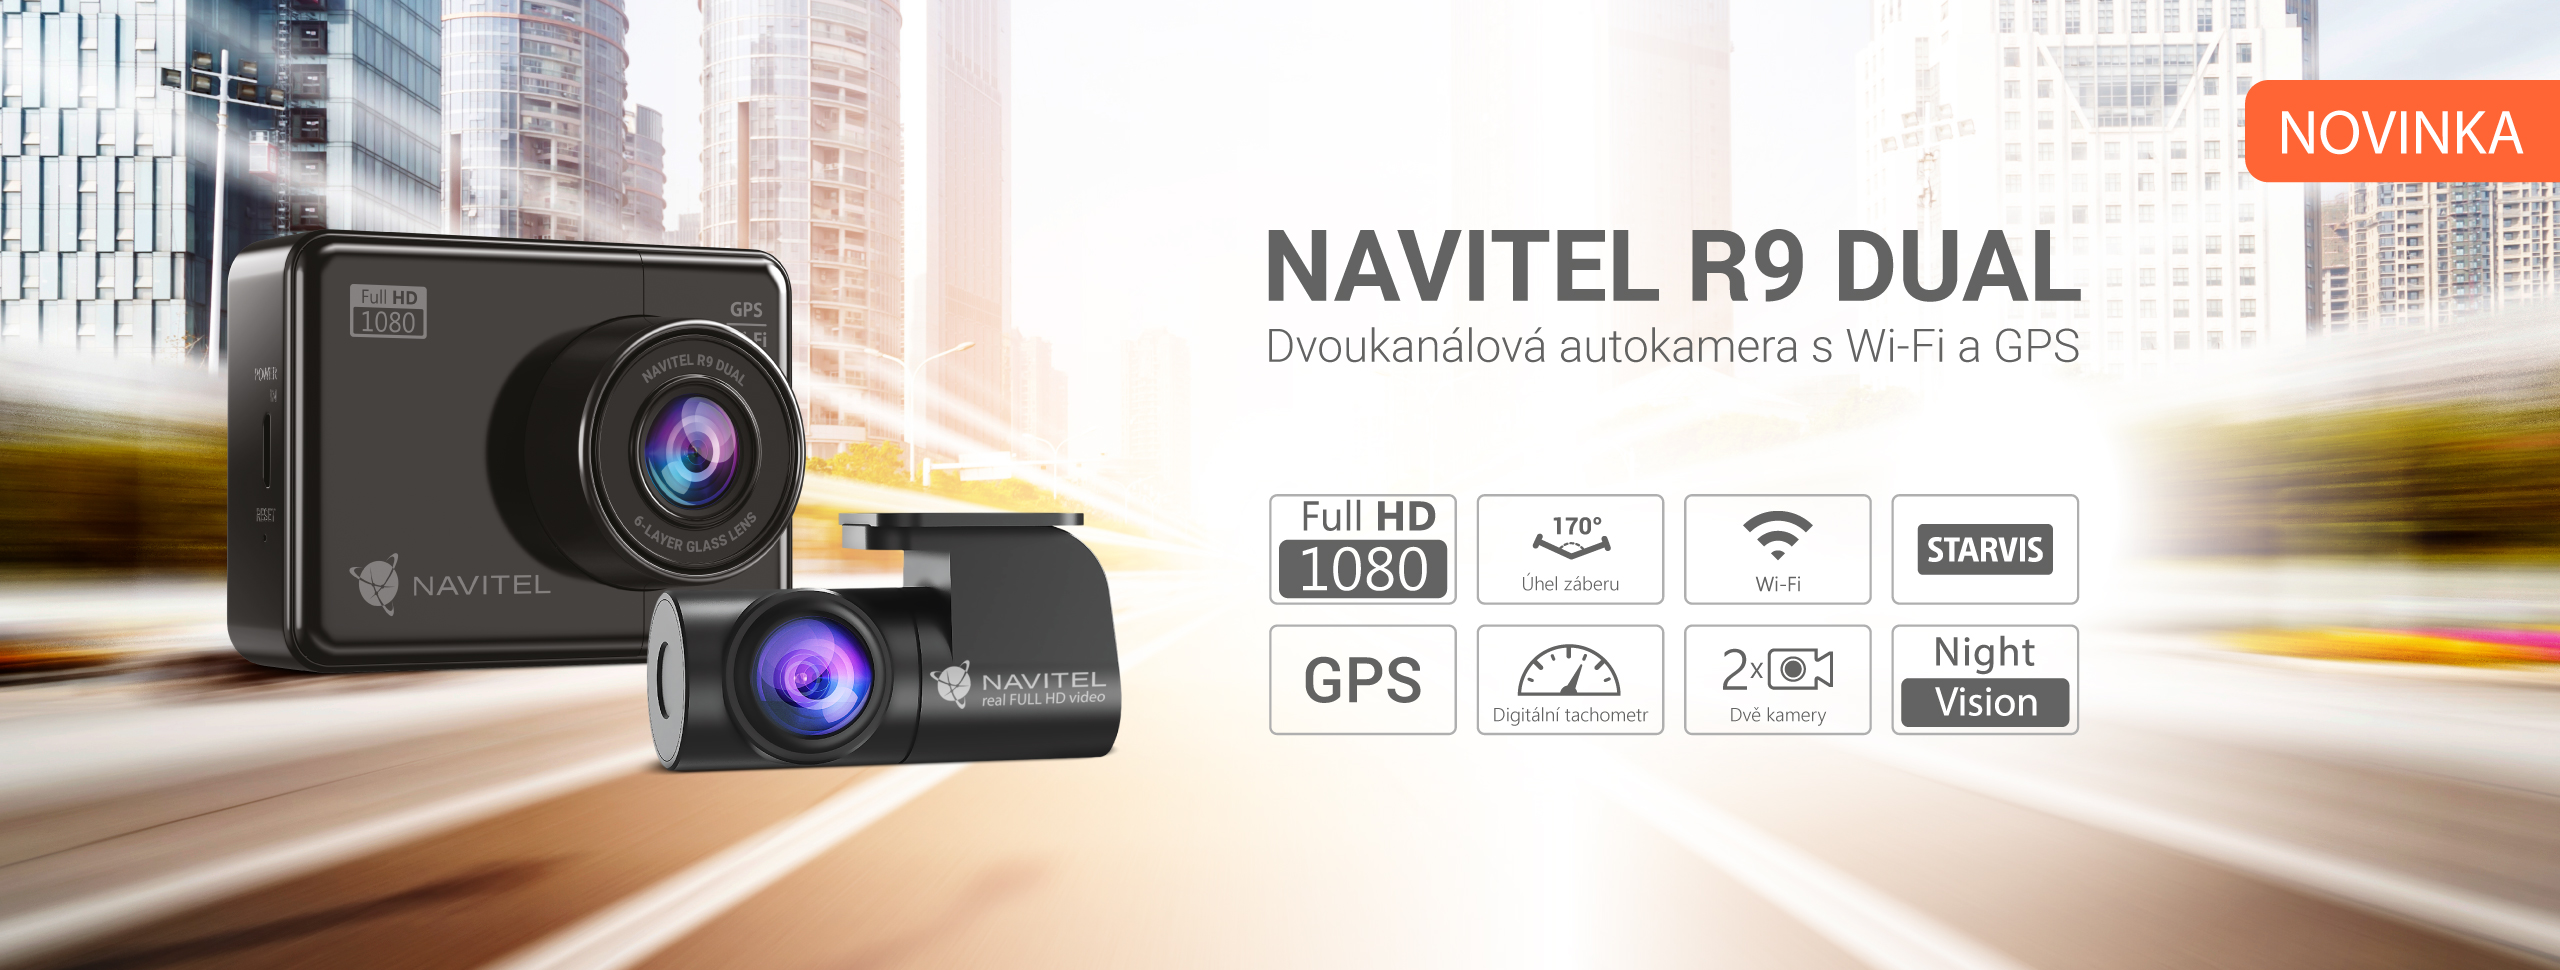 NAVITEL představuje nový model DVR na trhu - NAVITEL R9 DUAL